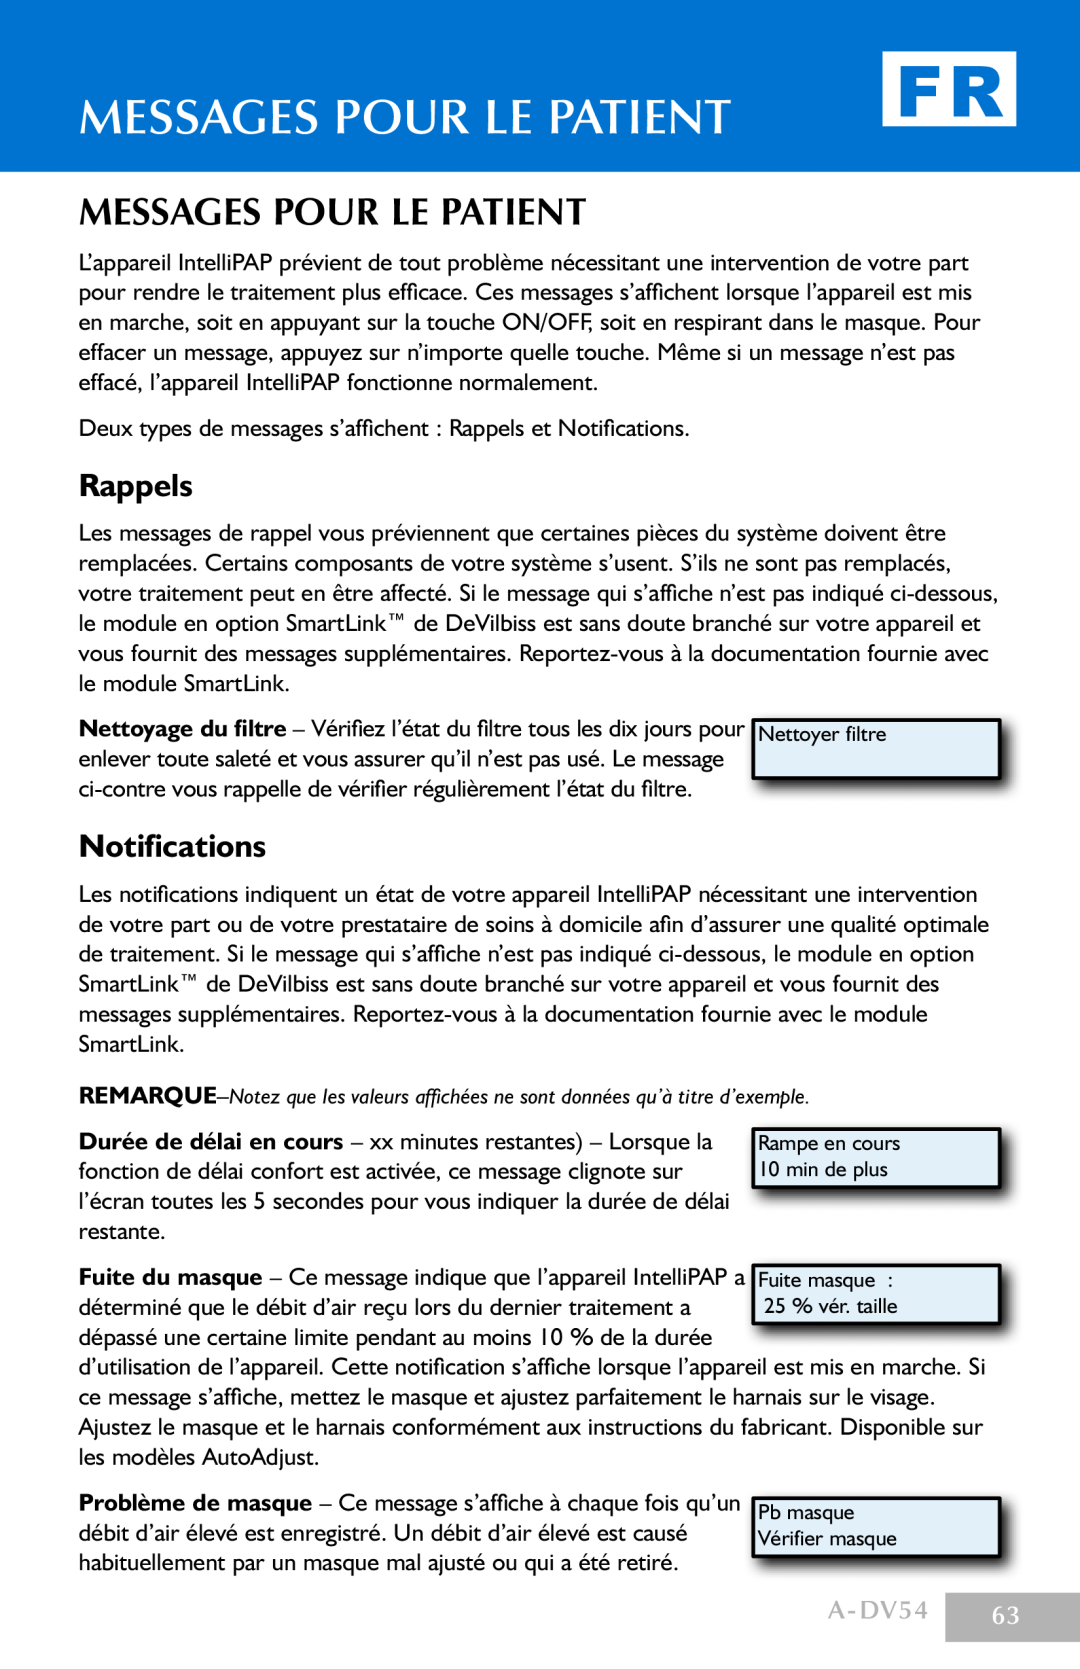 DeVillbiss Air Power Company manual Messages Pour Le Patient, Rappels, Notifications, A-DV54 